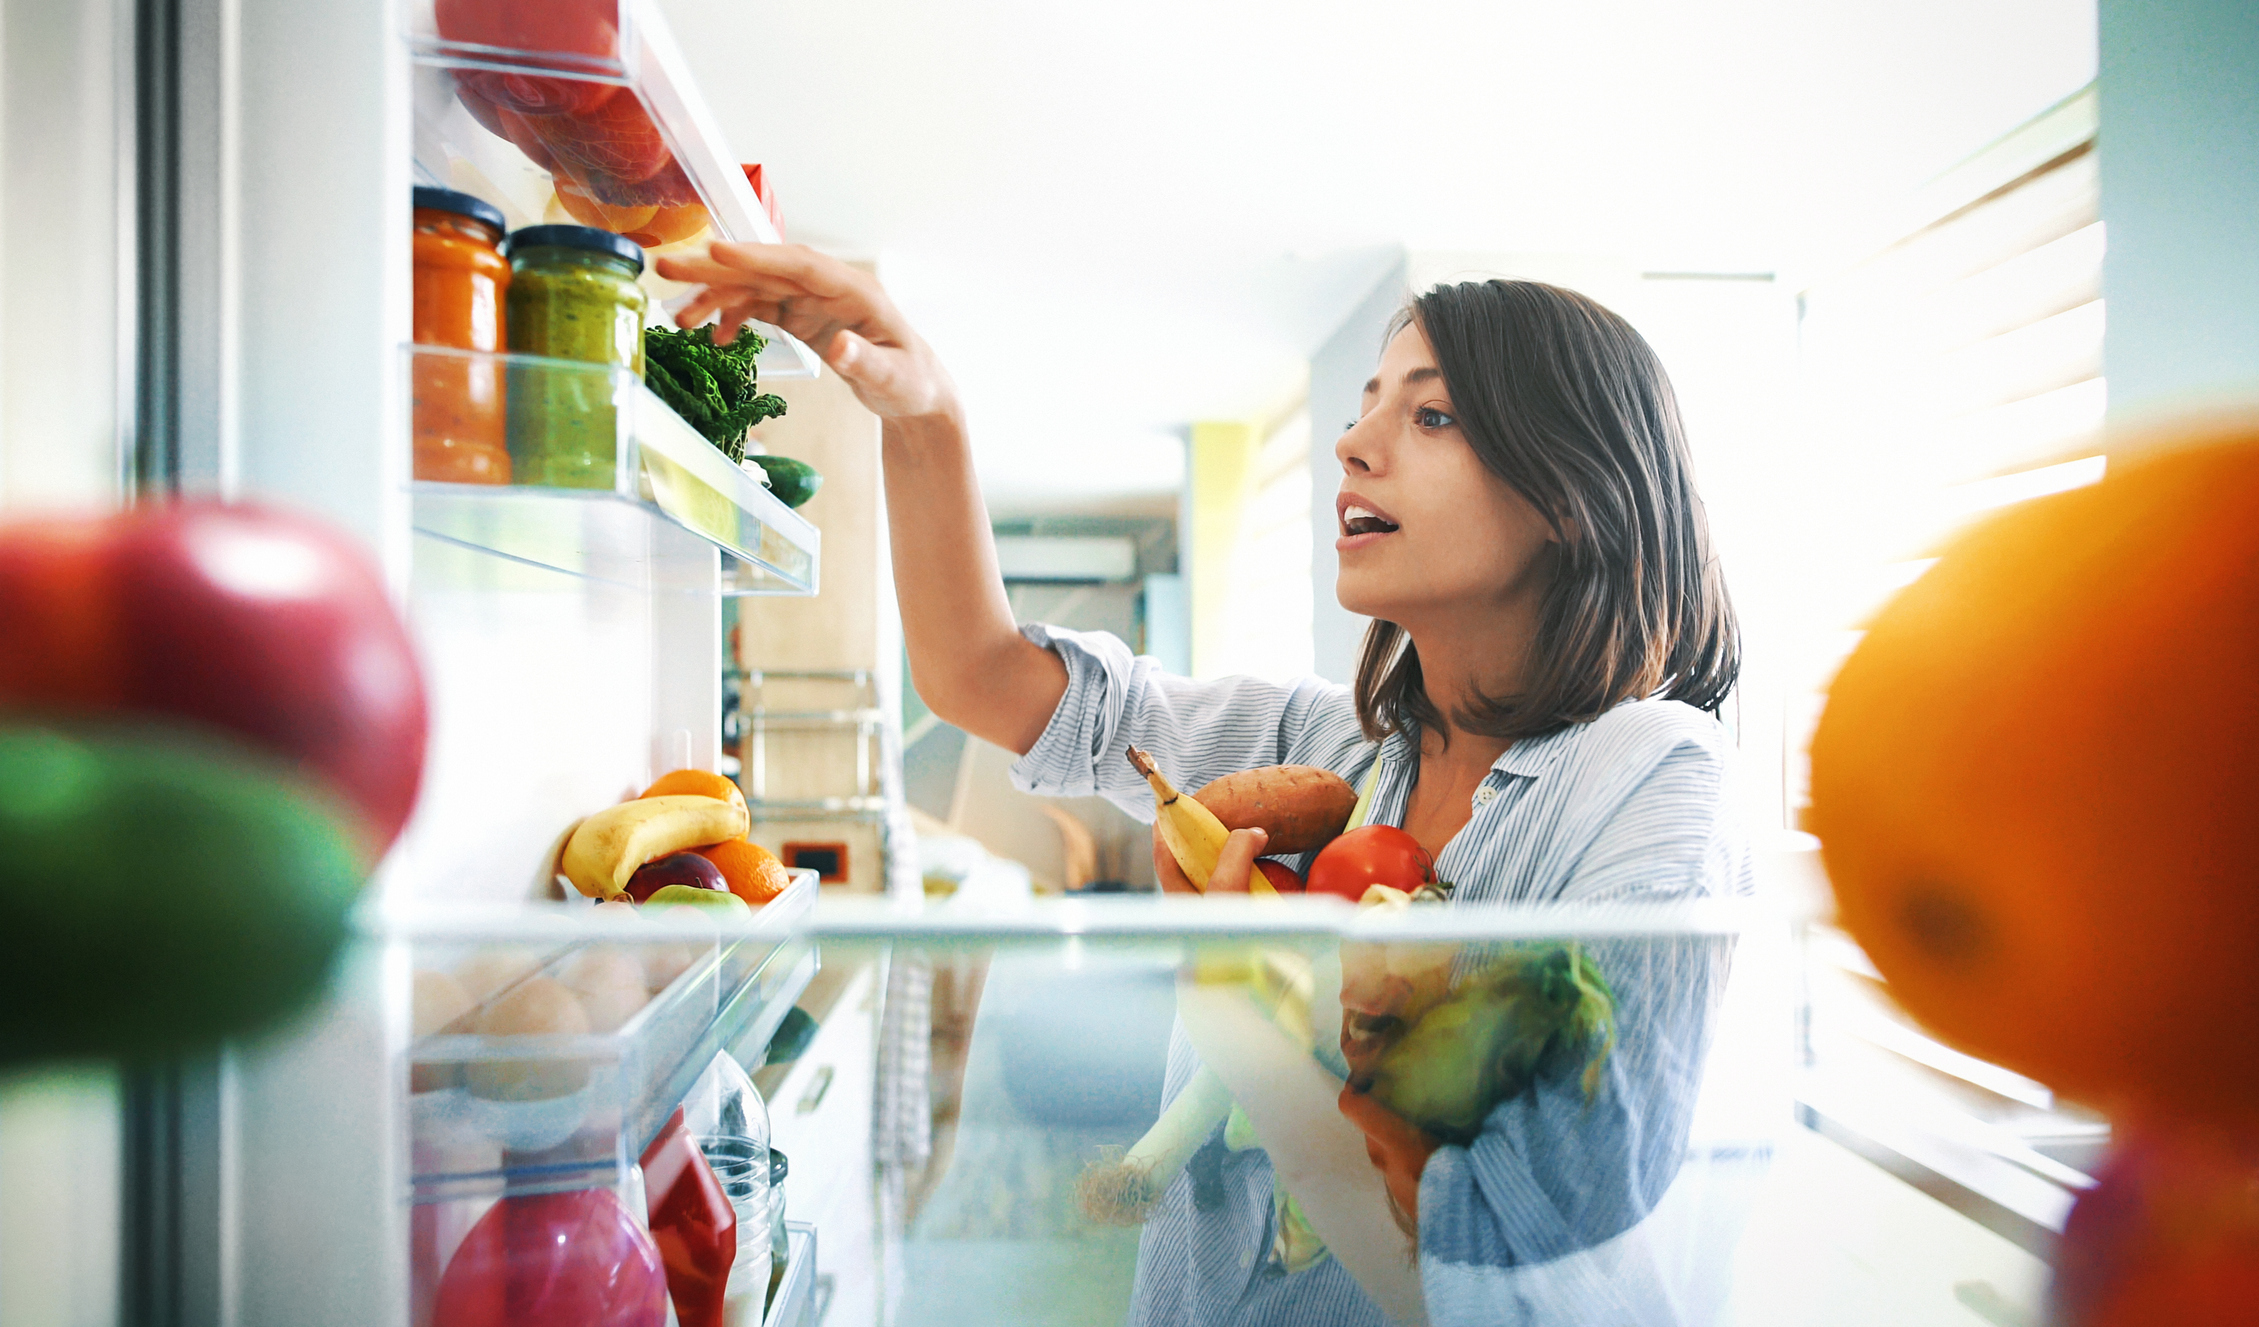 woman putting away produce in fridge